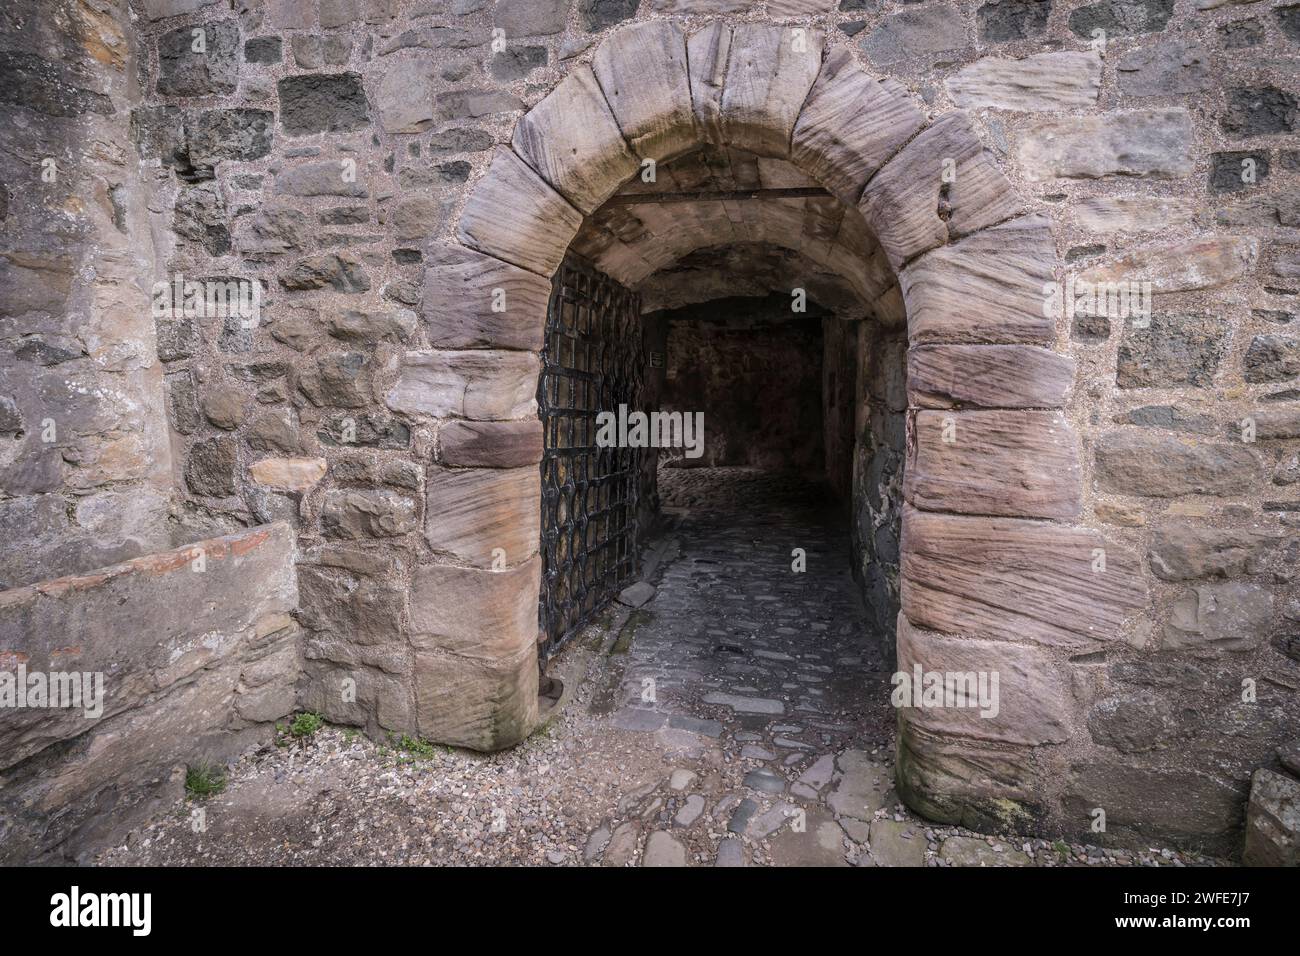 Detail von Blackness Castle in der Nähe von Edinburgh. Stockfoto